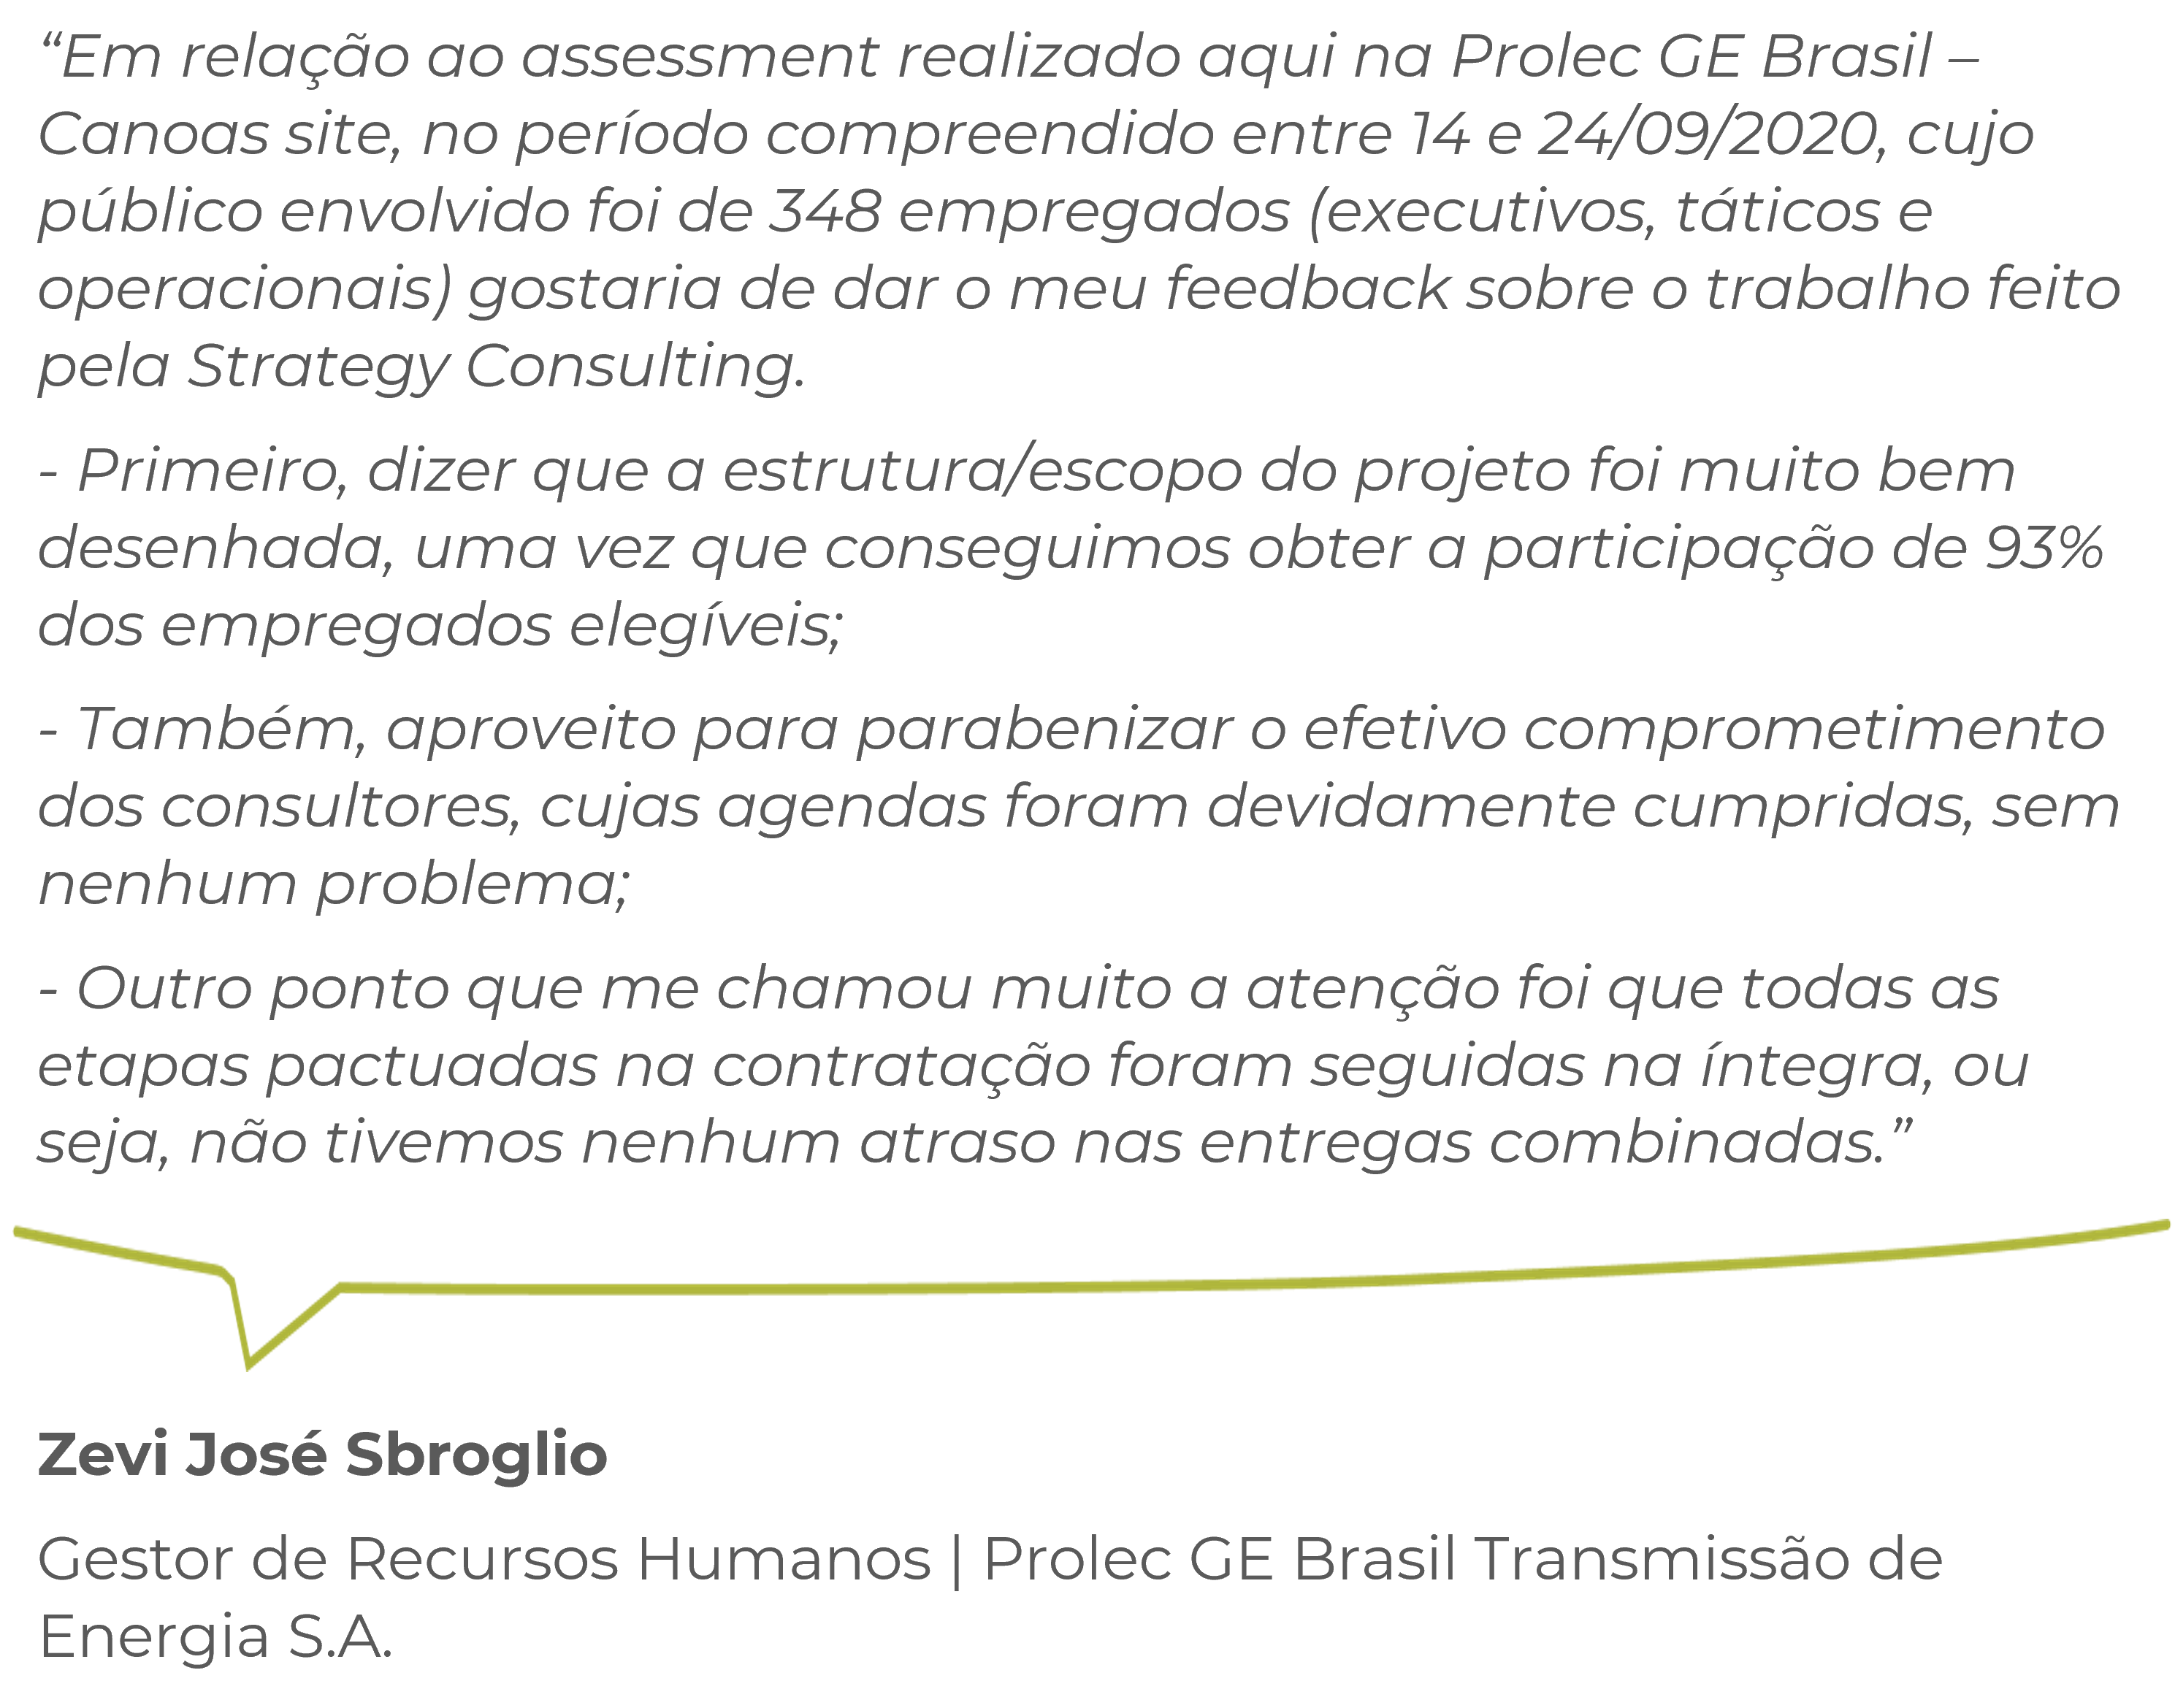 Zevi José Sbroglio Gestor de Recursos Humanos | Prolec GE Brasil Transmissão de Energia S.A.